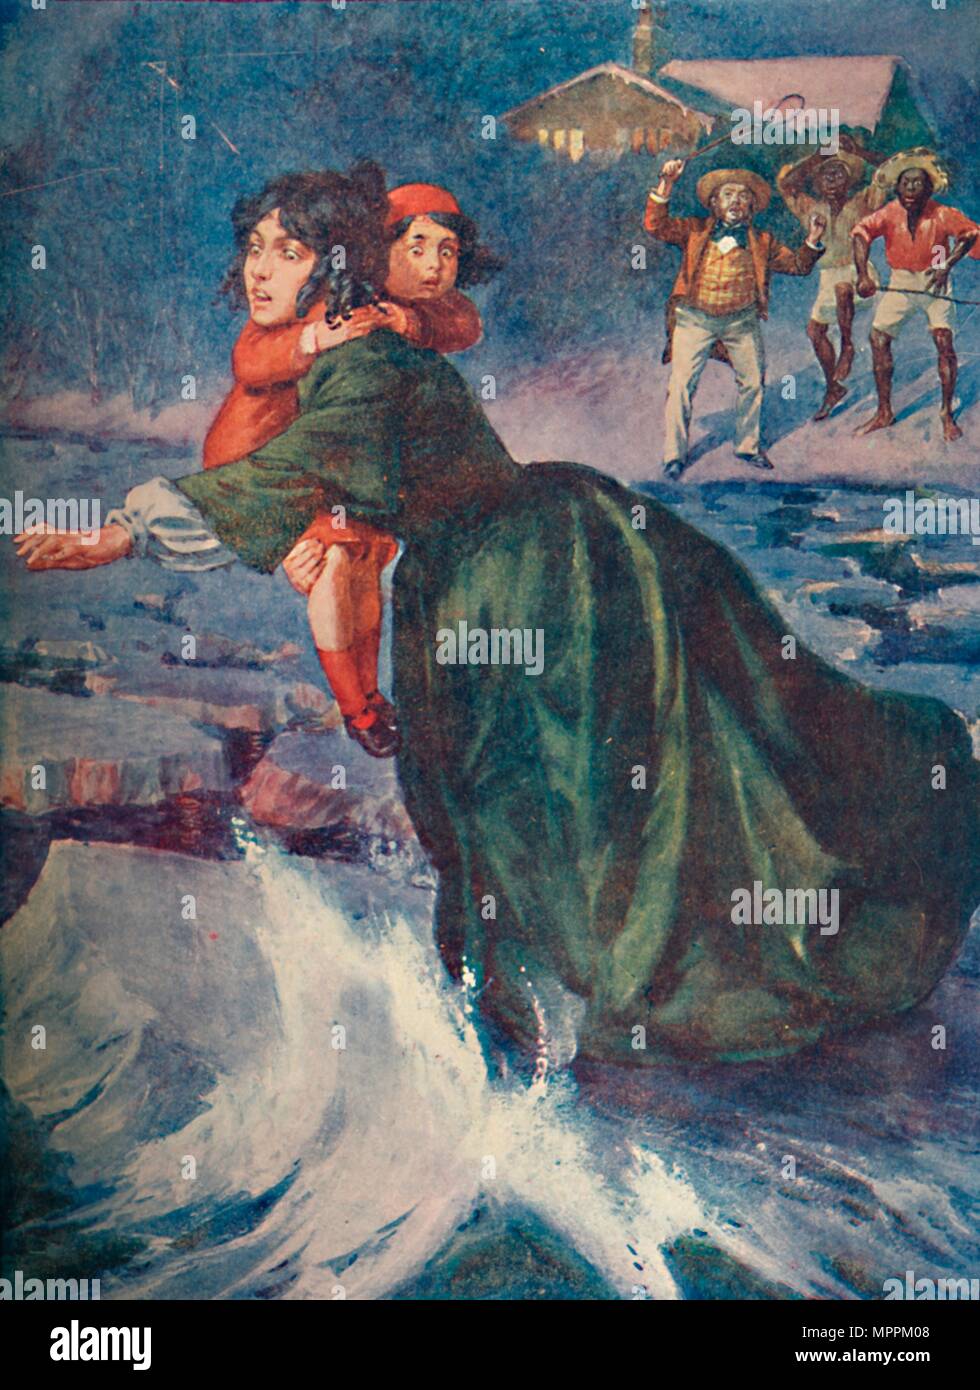 'L'énorme fragment vert de glace aigus et grinçaient', 1929. Artiste : Inconnu. Banque D'Images